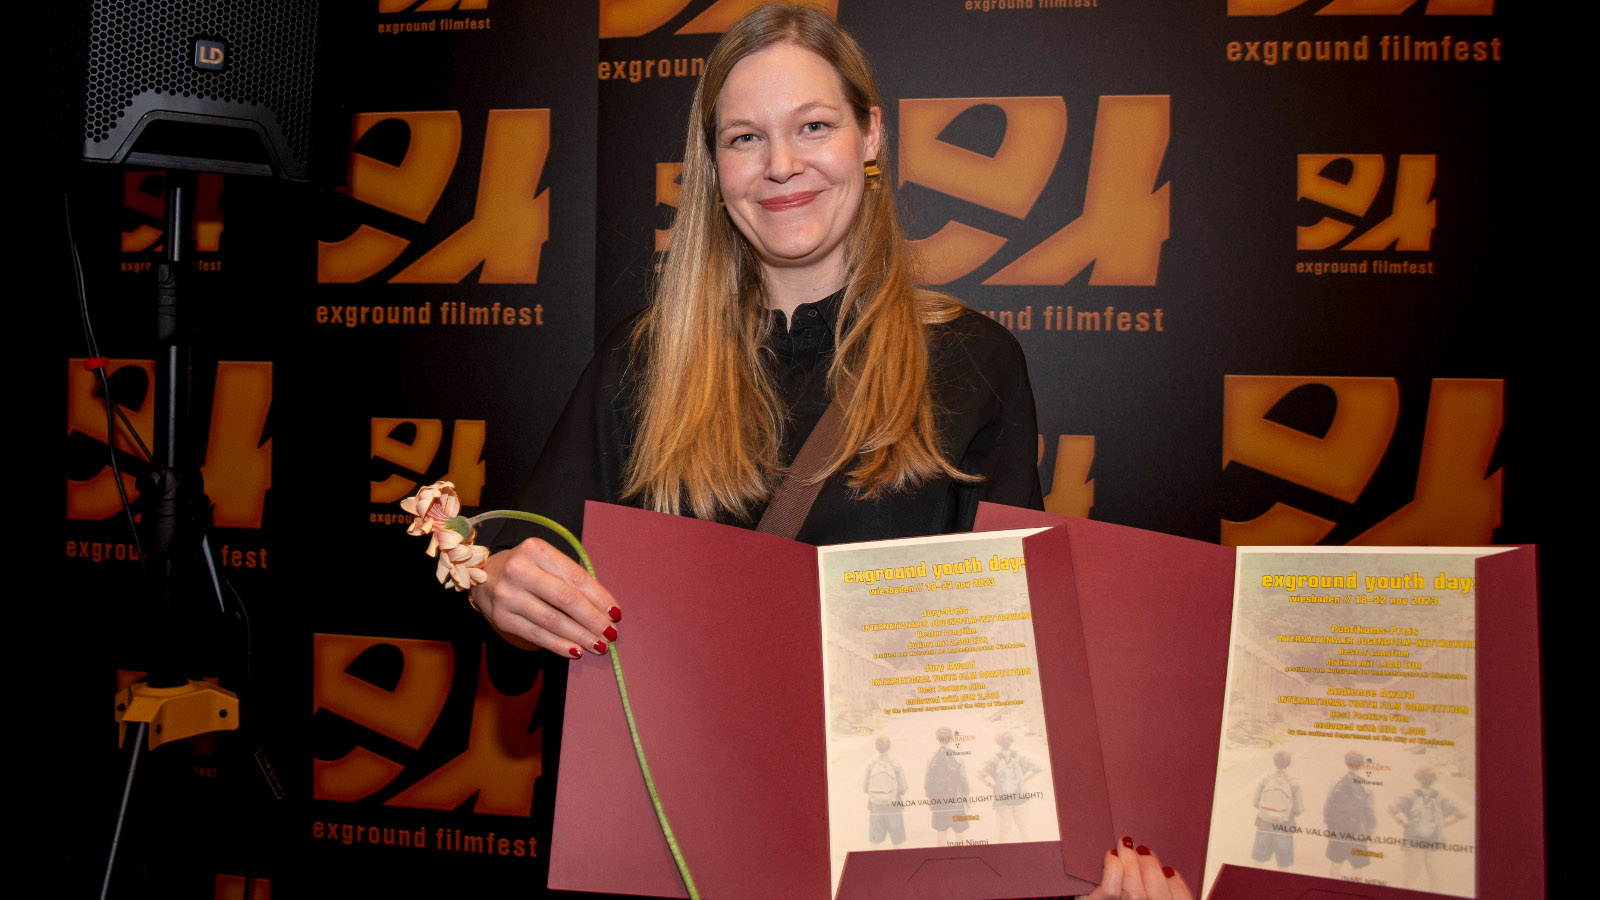 Juuli Niemi seisoo kuvassa keskellä ja hänellä on kahdessa kansiossa kaksi kunniakirjaa. Kansiot ovat burgundin punaisia. Taustalla on filmifestivaalin kelta-mustia julisteita.